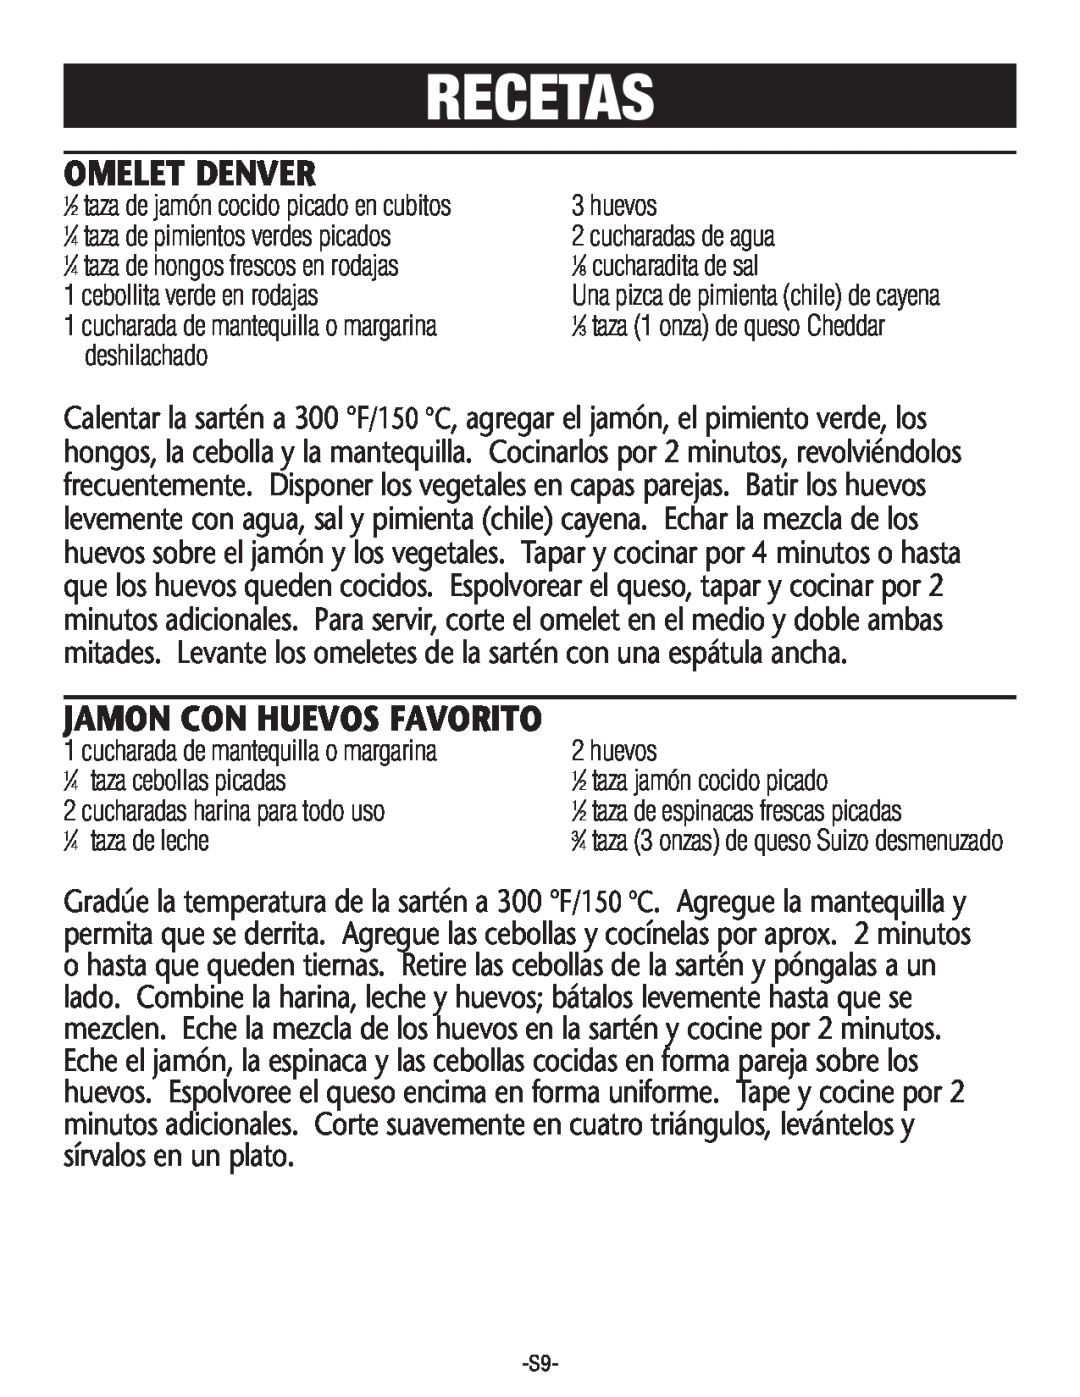 Rival S160 manual Recetas, Omelet Denver, Jamon Con Huevos Favorito 